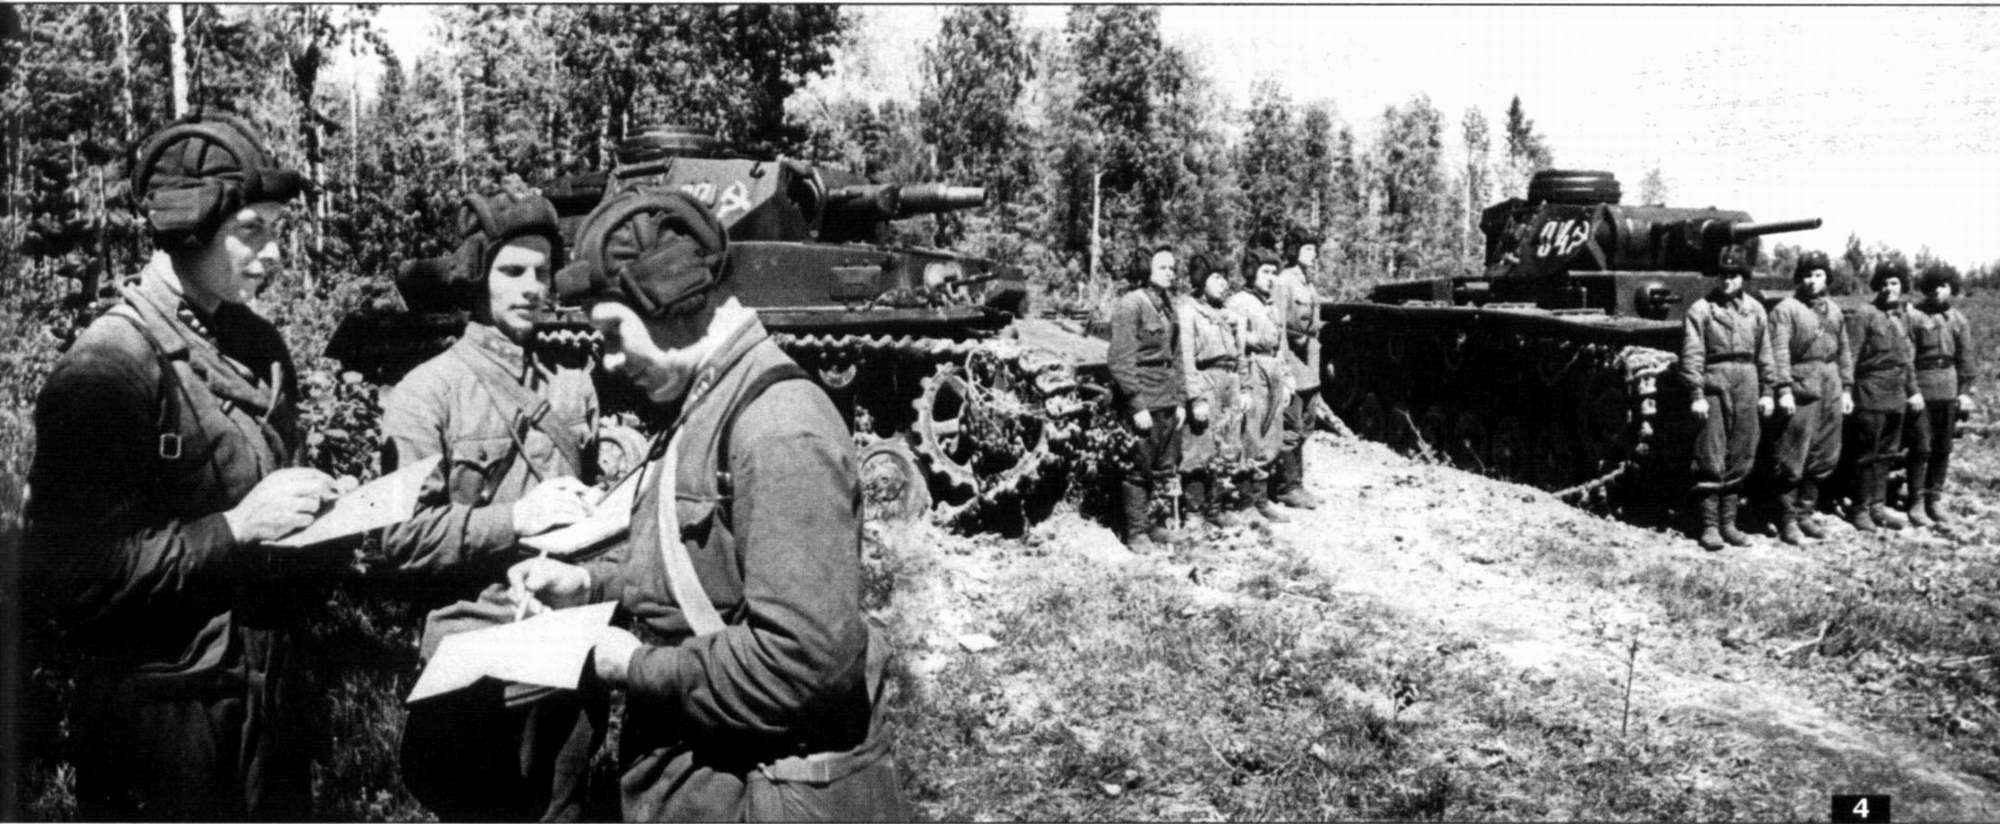 A Vörös Hadsereg páncélosai A bal oldalon egy Panzer IV, a jobb oldalon pedig egy Panzer III látható Ezeket a tankokat a németektől zsákmányolták, és a Vörös Hadsereg használta őket.